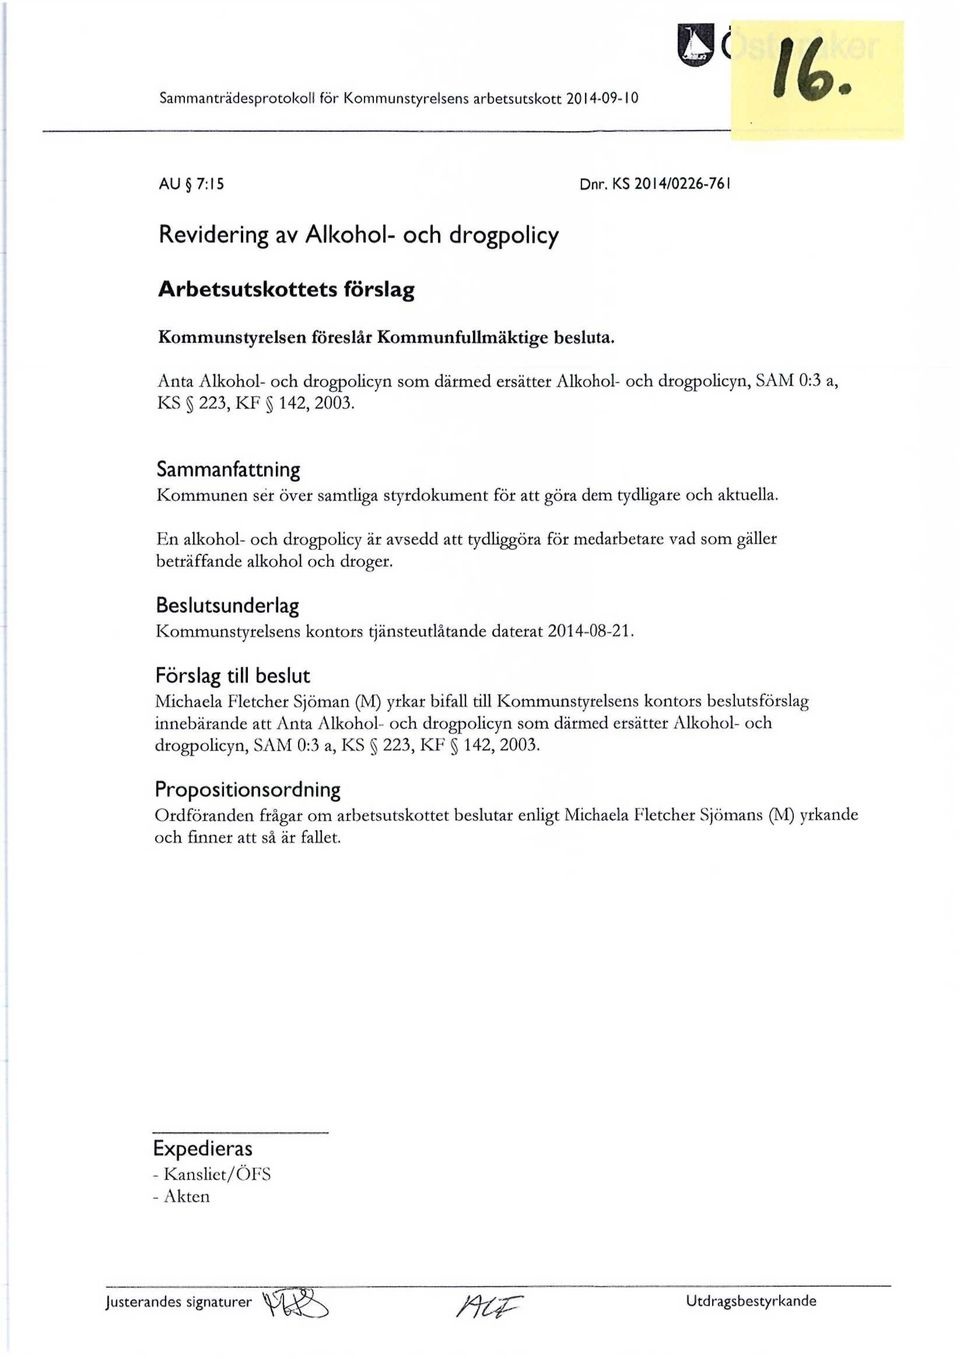 Anta Alkohol- och drogpolicyn som därmed ersätter Alkohol- och drogpolicyn, SAM 0:3 a, KS 223, KF 142, 2003.